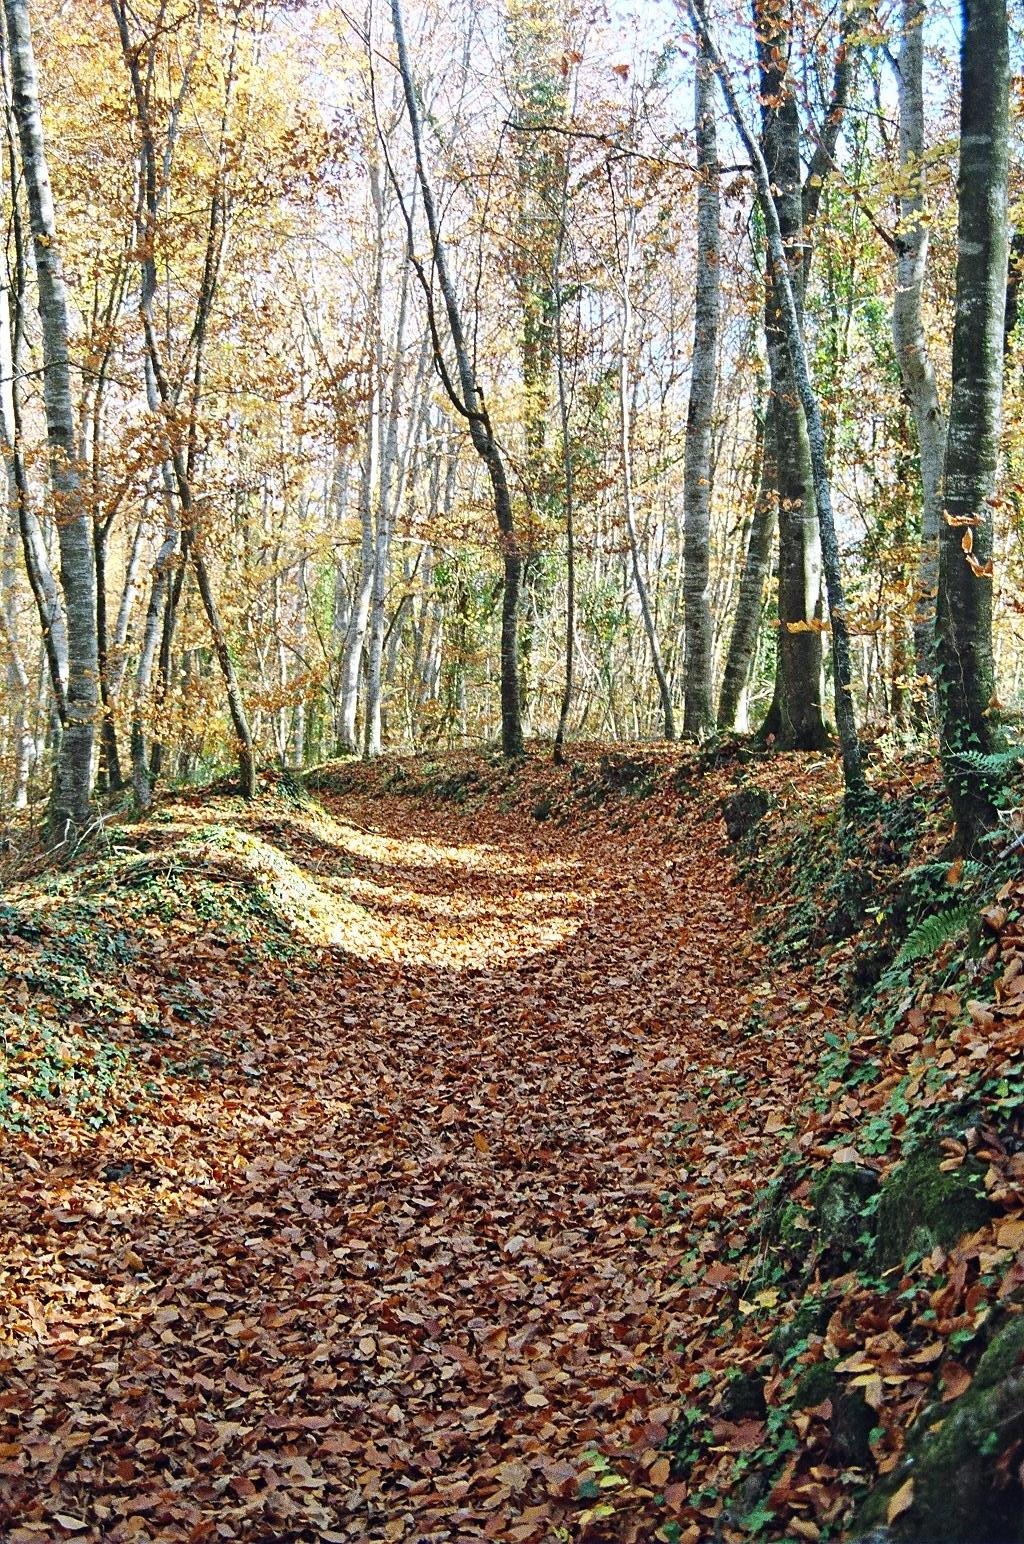 Paisaje otonal en un bosque con hojas marrones en el suelo